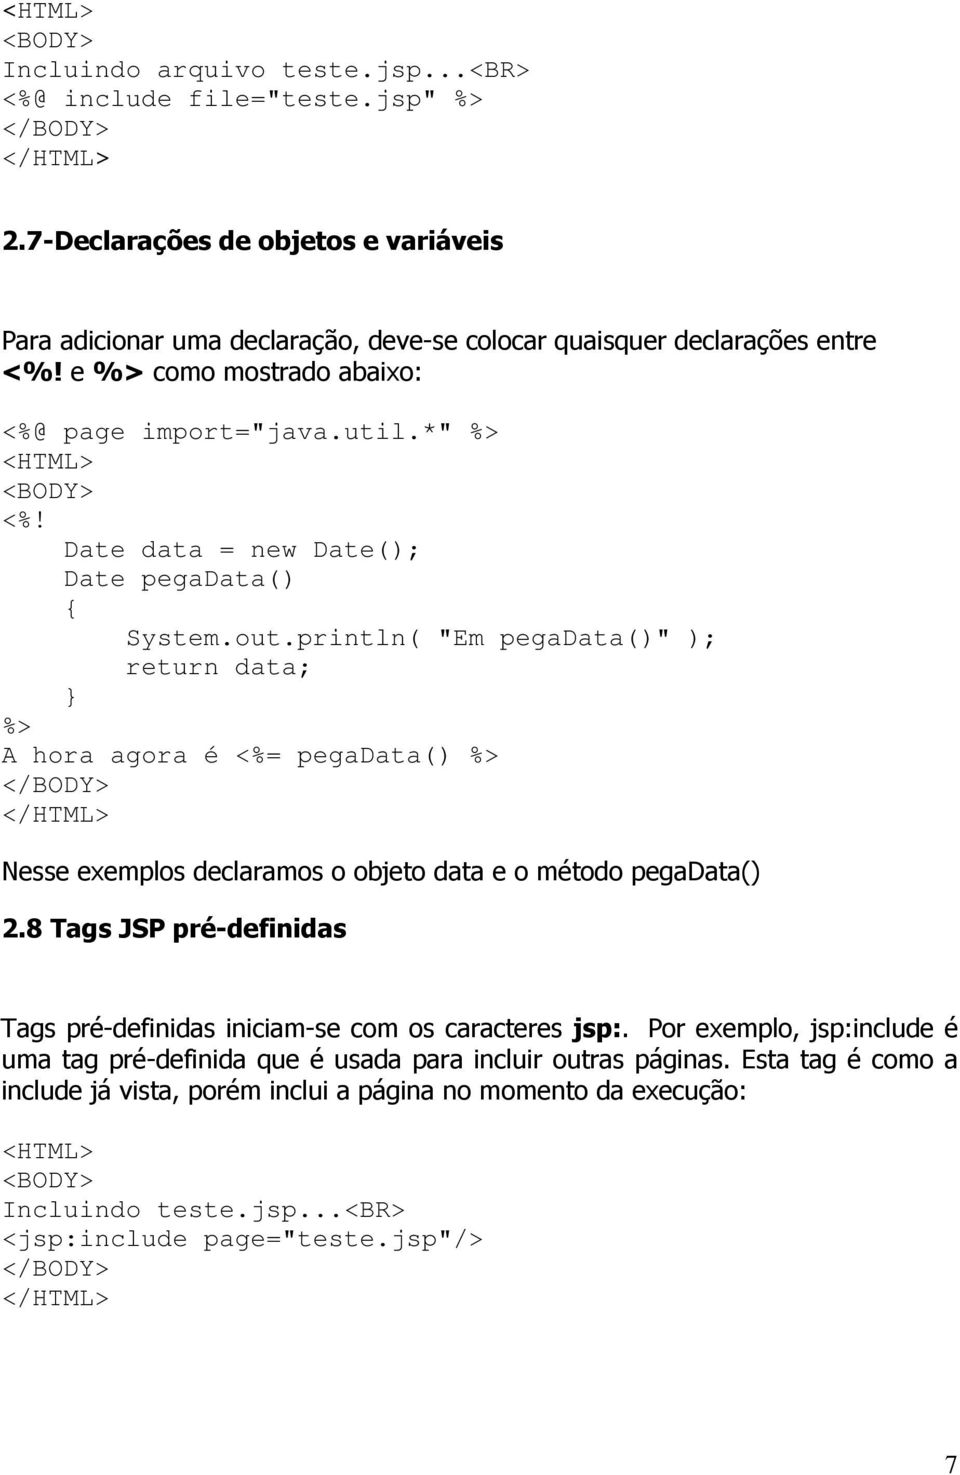 println( "Em pegadata()" ); return data; A hora agora é = pegadata() Nesse exemplos declaramos o objeto data e o método pegadata() 2.